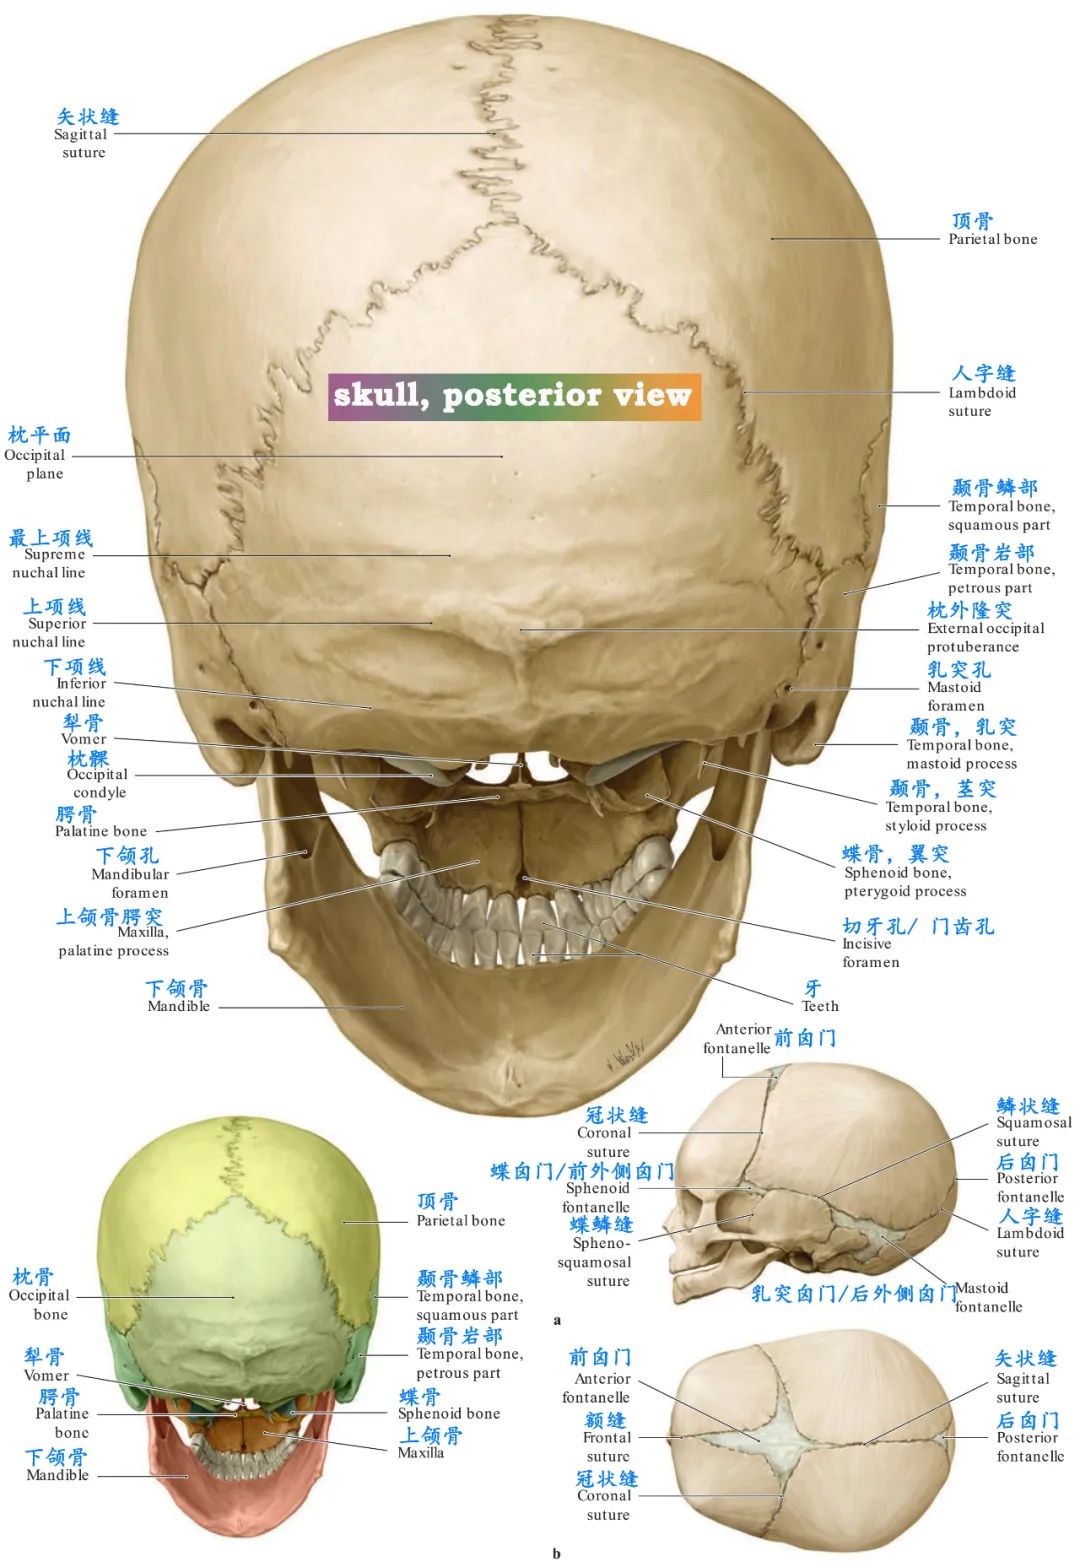 看颅部外表面解剖:2,颅骨重要解剖标志:1,所有脑颅骨如何组成颅腔的